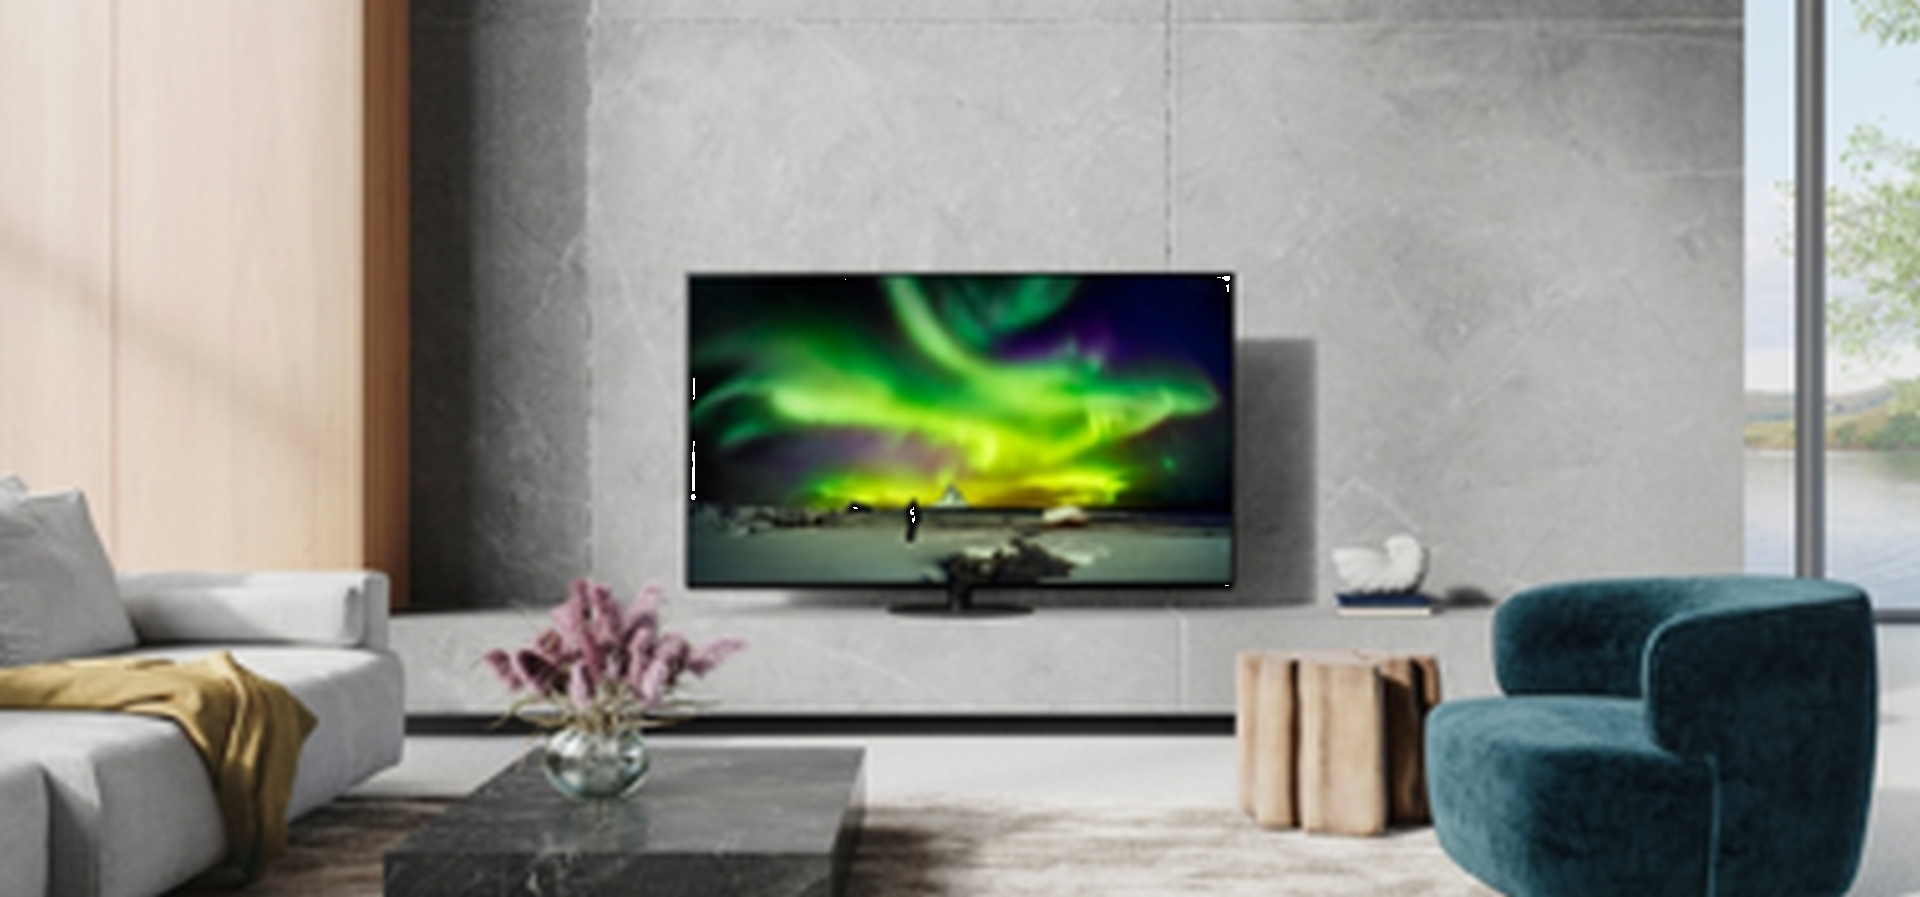 News HCFR : Panasonic présente sa nouvelle gamme 2022 de TVs OLED et LED -  HCFR Forum & Magazine